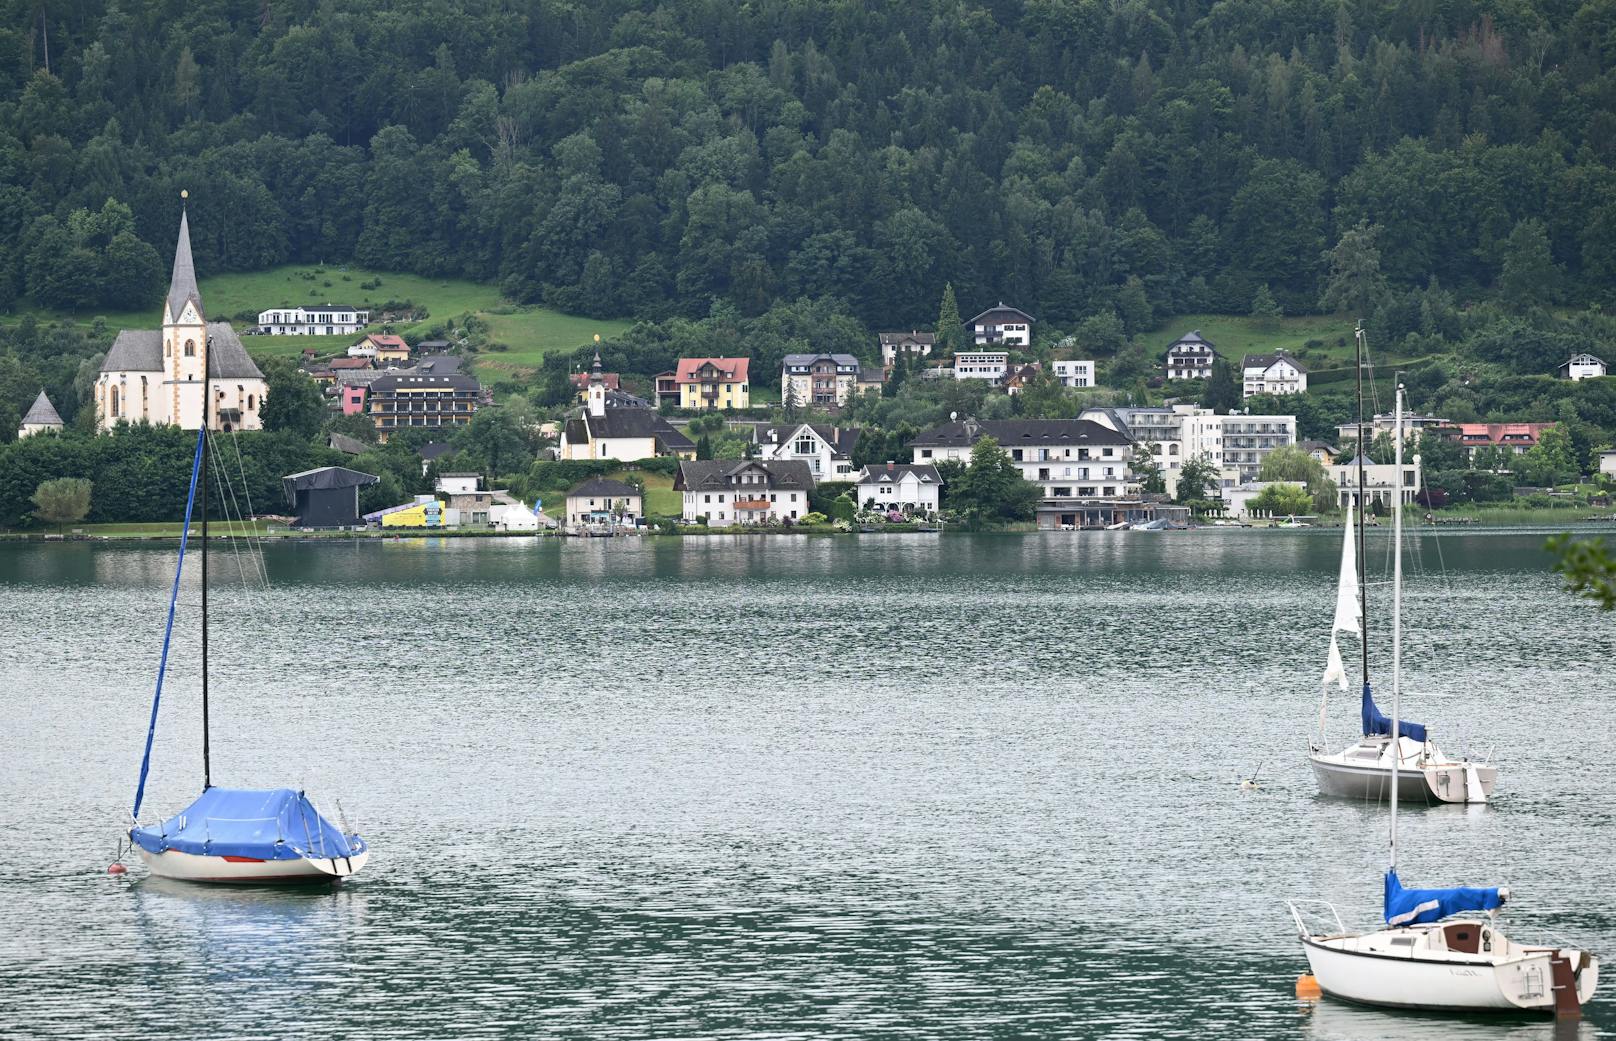 Private Seegrundstücke in Österreich jetzt mietbar